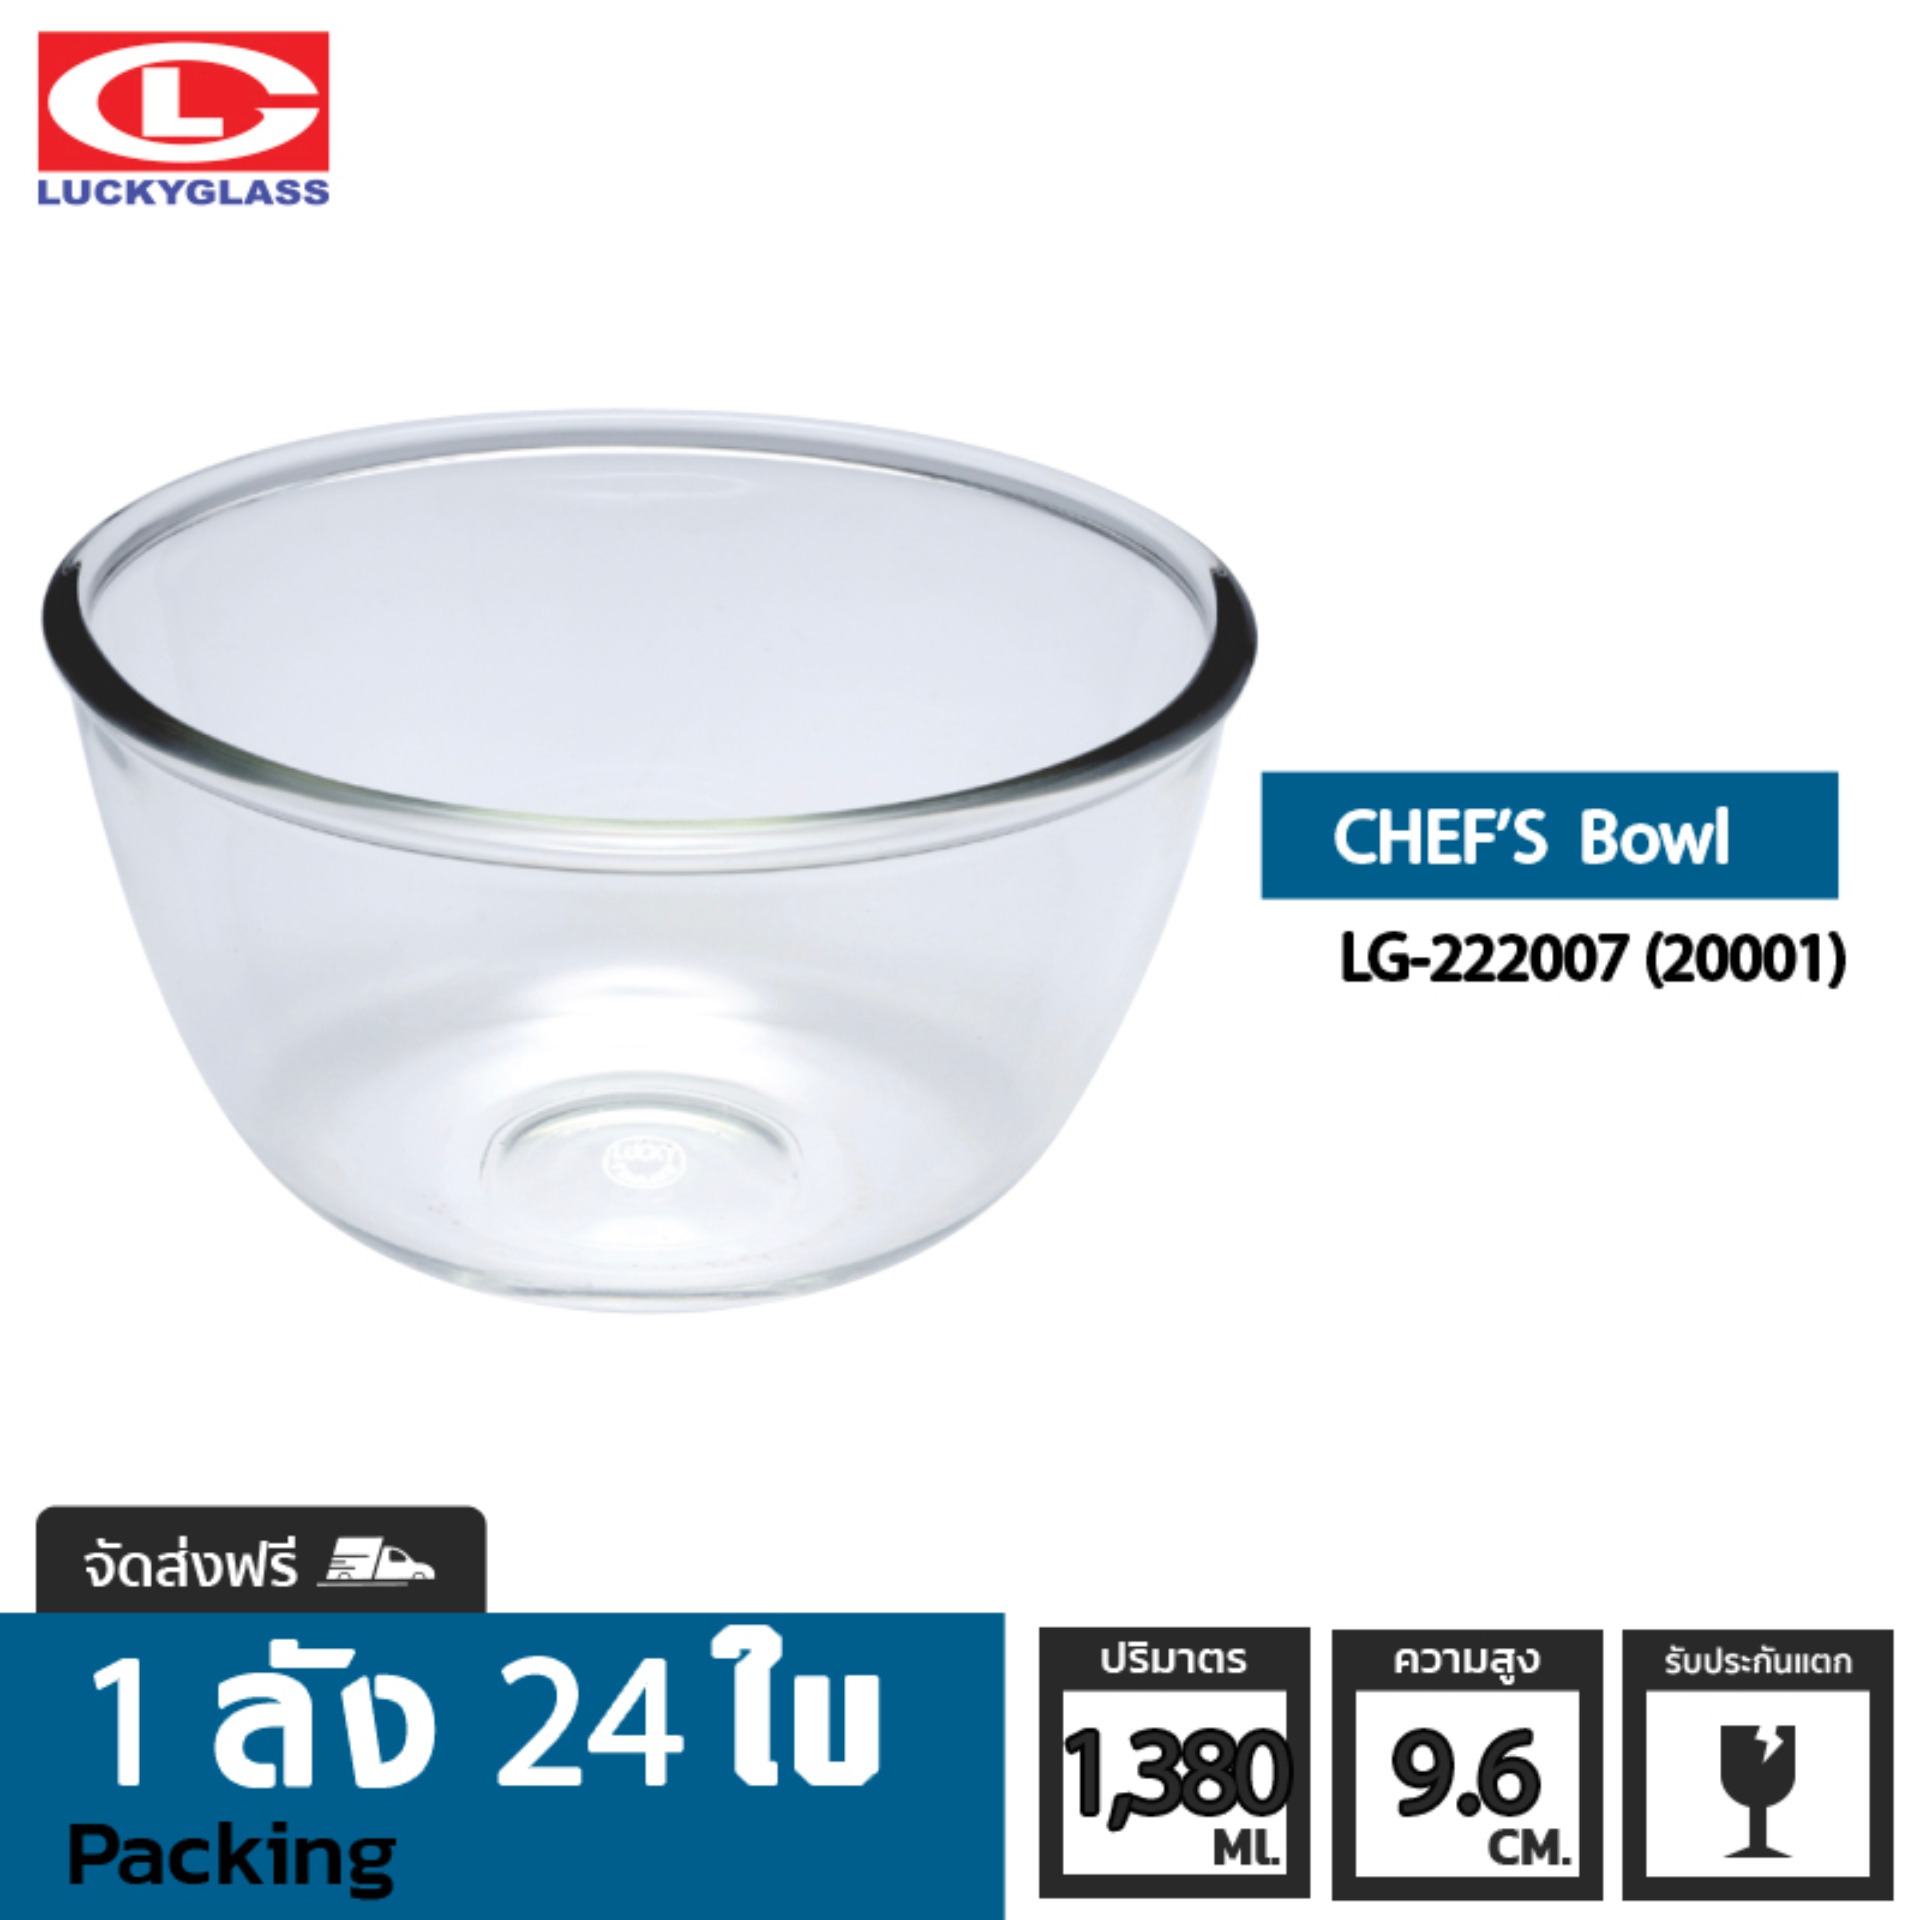 ชามแก้ว LUCKY รุ่น LG-222007(20001) Chef Bowl 7 in.[24ใบ] - ส่งฟรี + ประกันแตก ชามเสิร์ฟ ชามใส ถ้วยใส่ซุบ ถ้วยน้ําซุป ชามแก้วผสมอาหาร ชามแก้วใหญ่ ชามใส่สลัด LUCKY